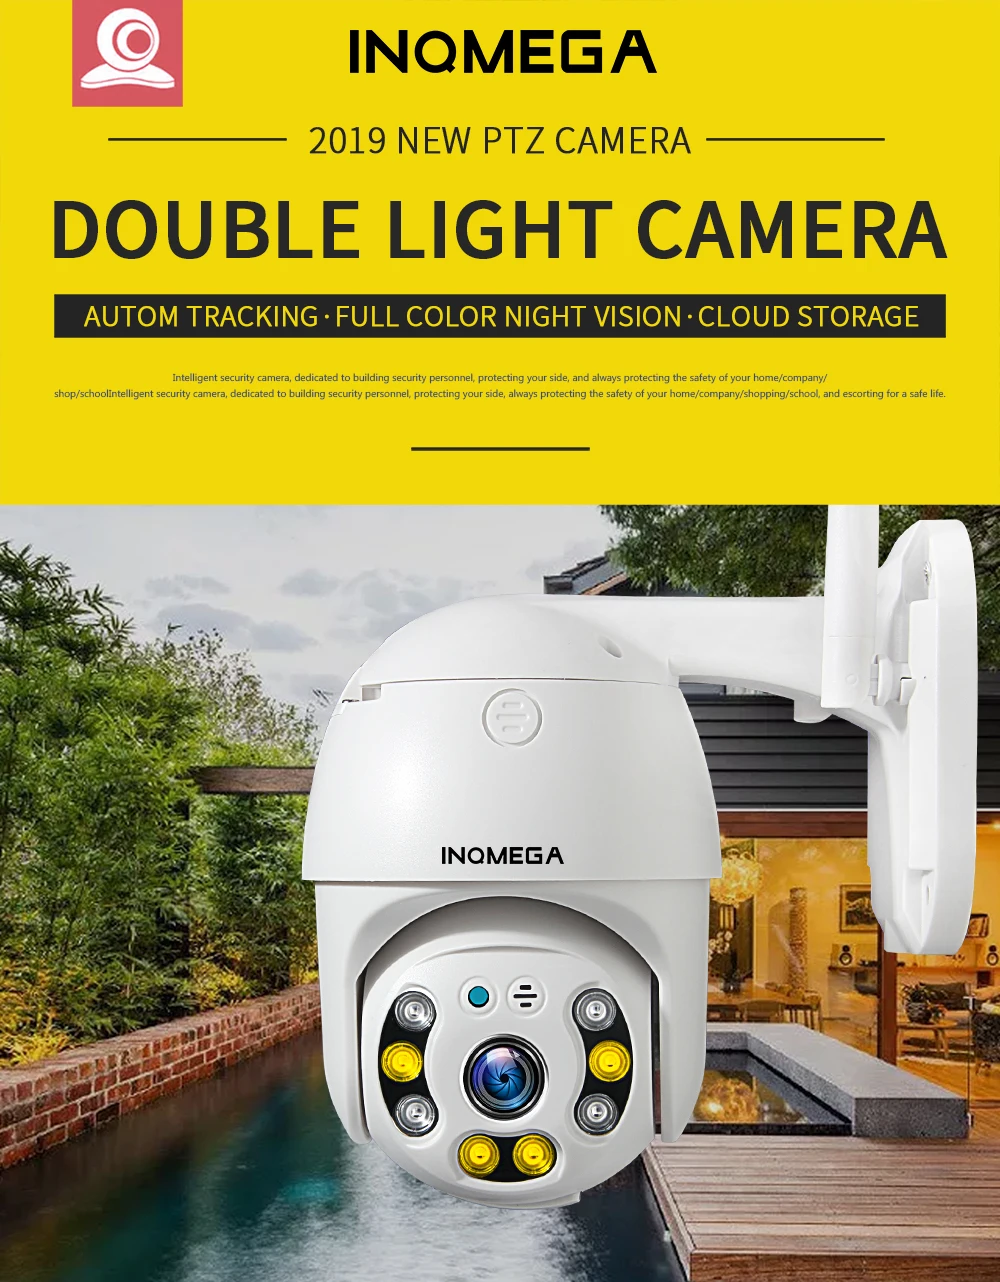 INQMEGA 1080P PTZ с автоматическим отслеживанием, уличная купольная камера, облачное хранилище, беспроводная камера IP66, водонепроницаемая, ночное видение, полный цвет